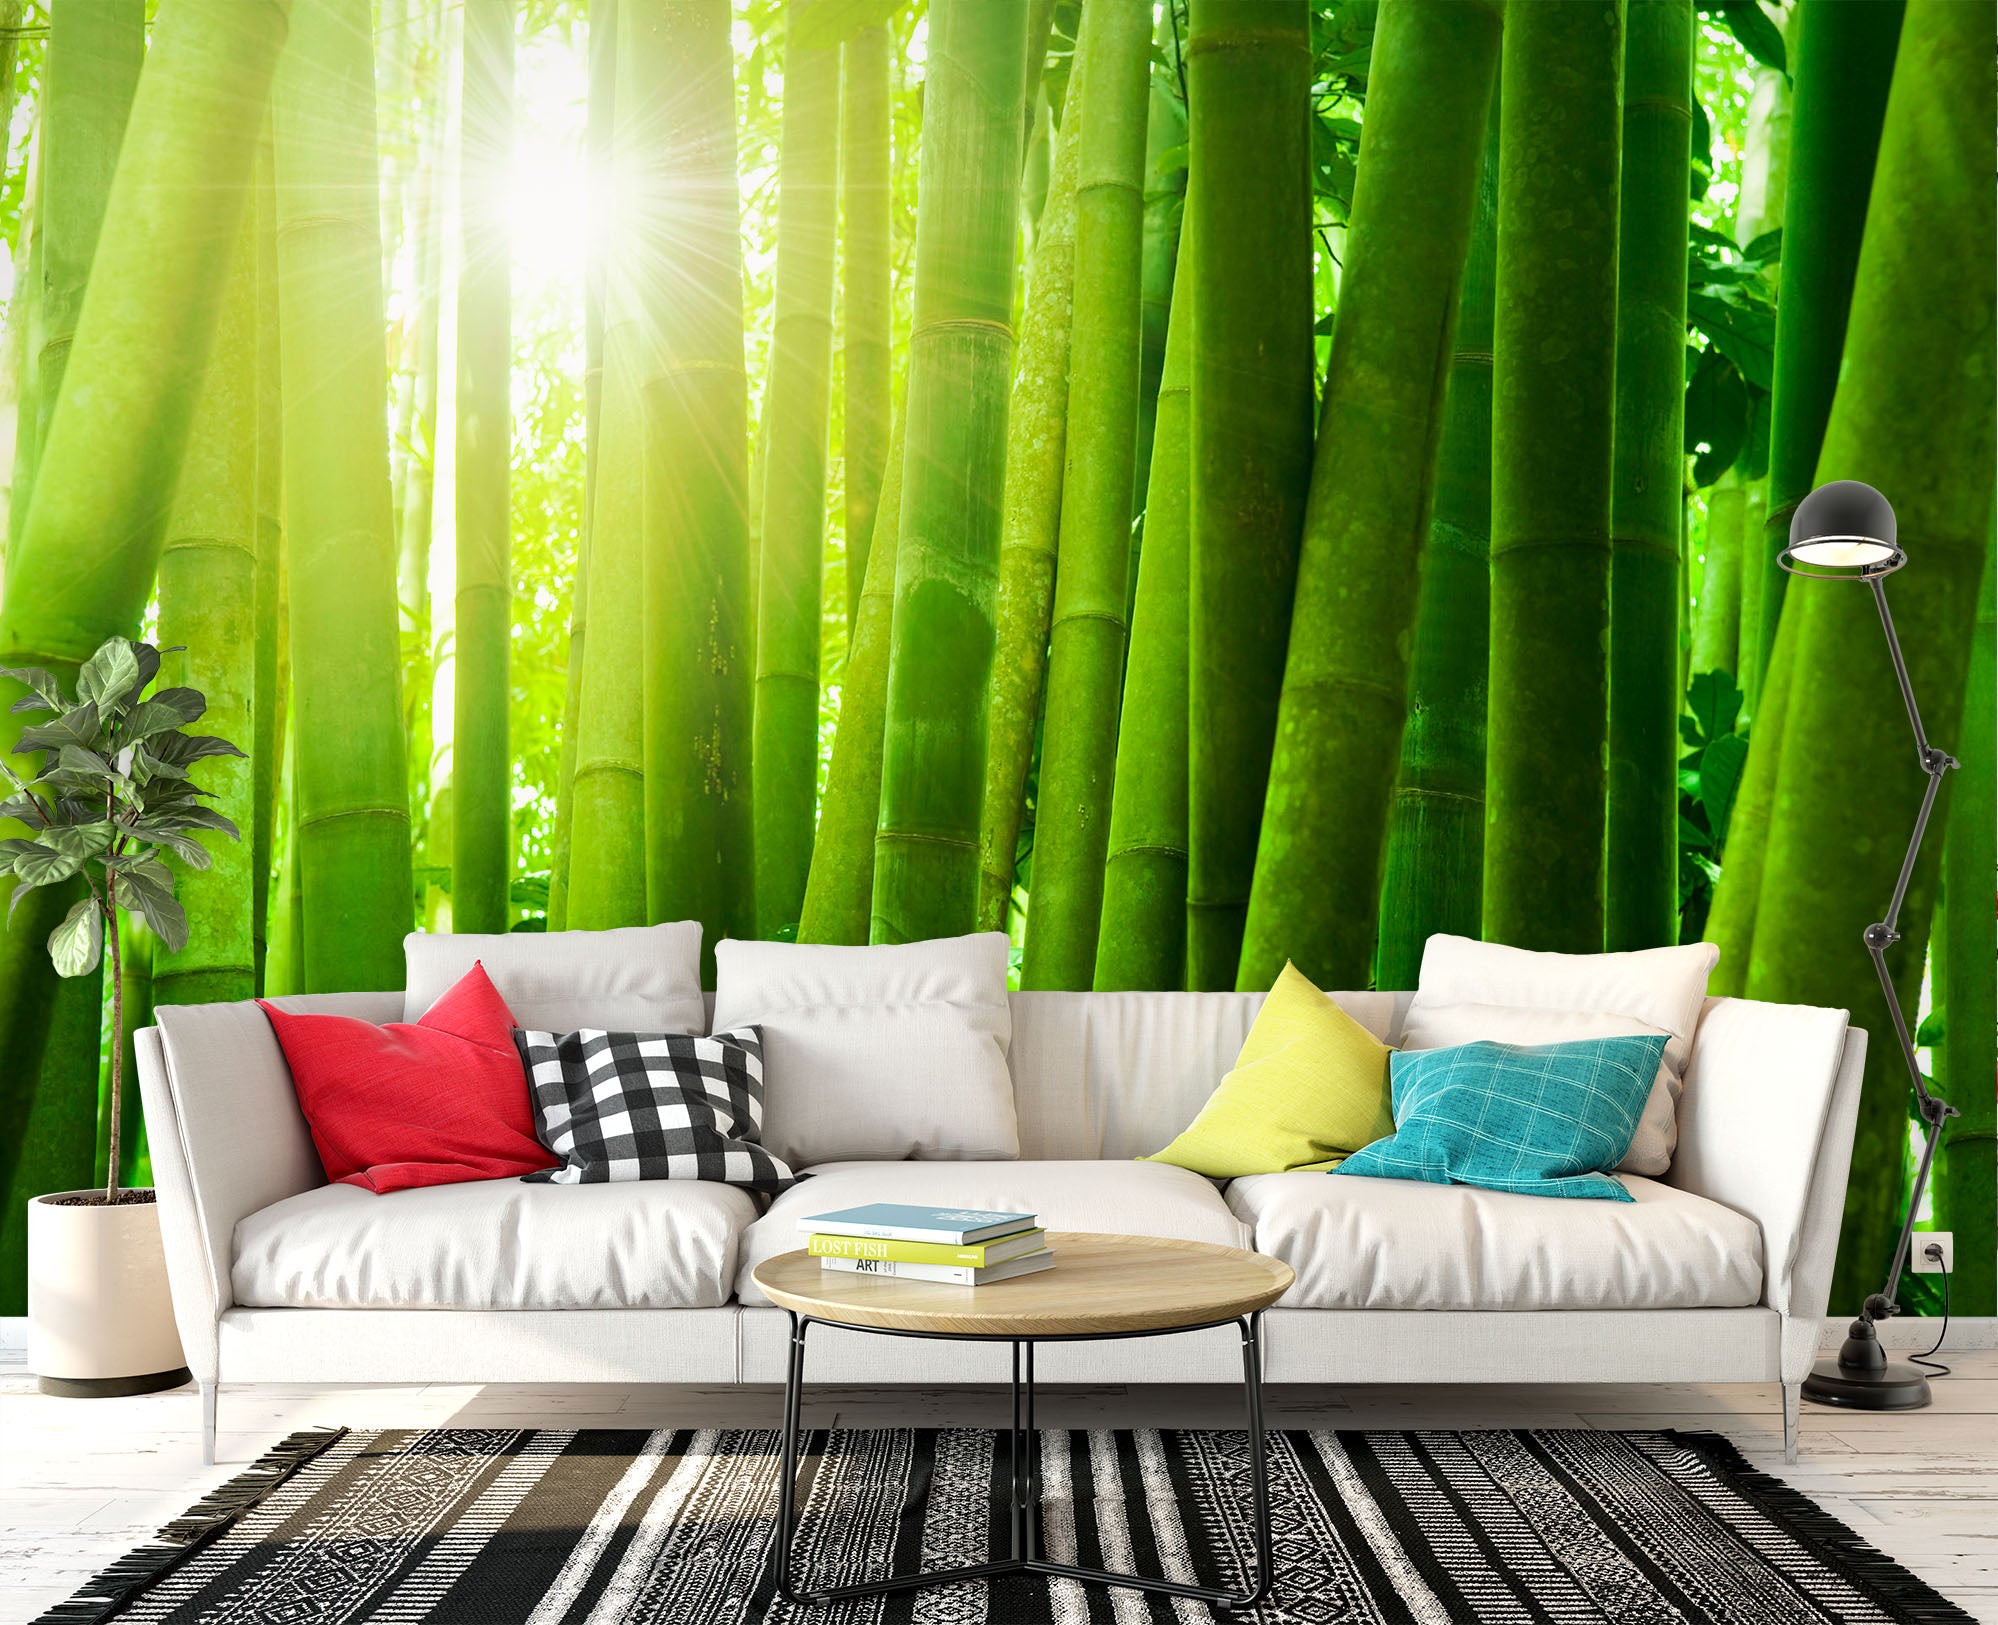 3D Green Bamboo Forest 1405 Wall Murals